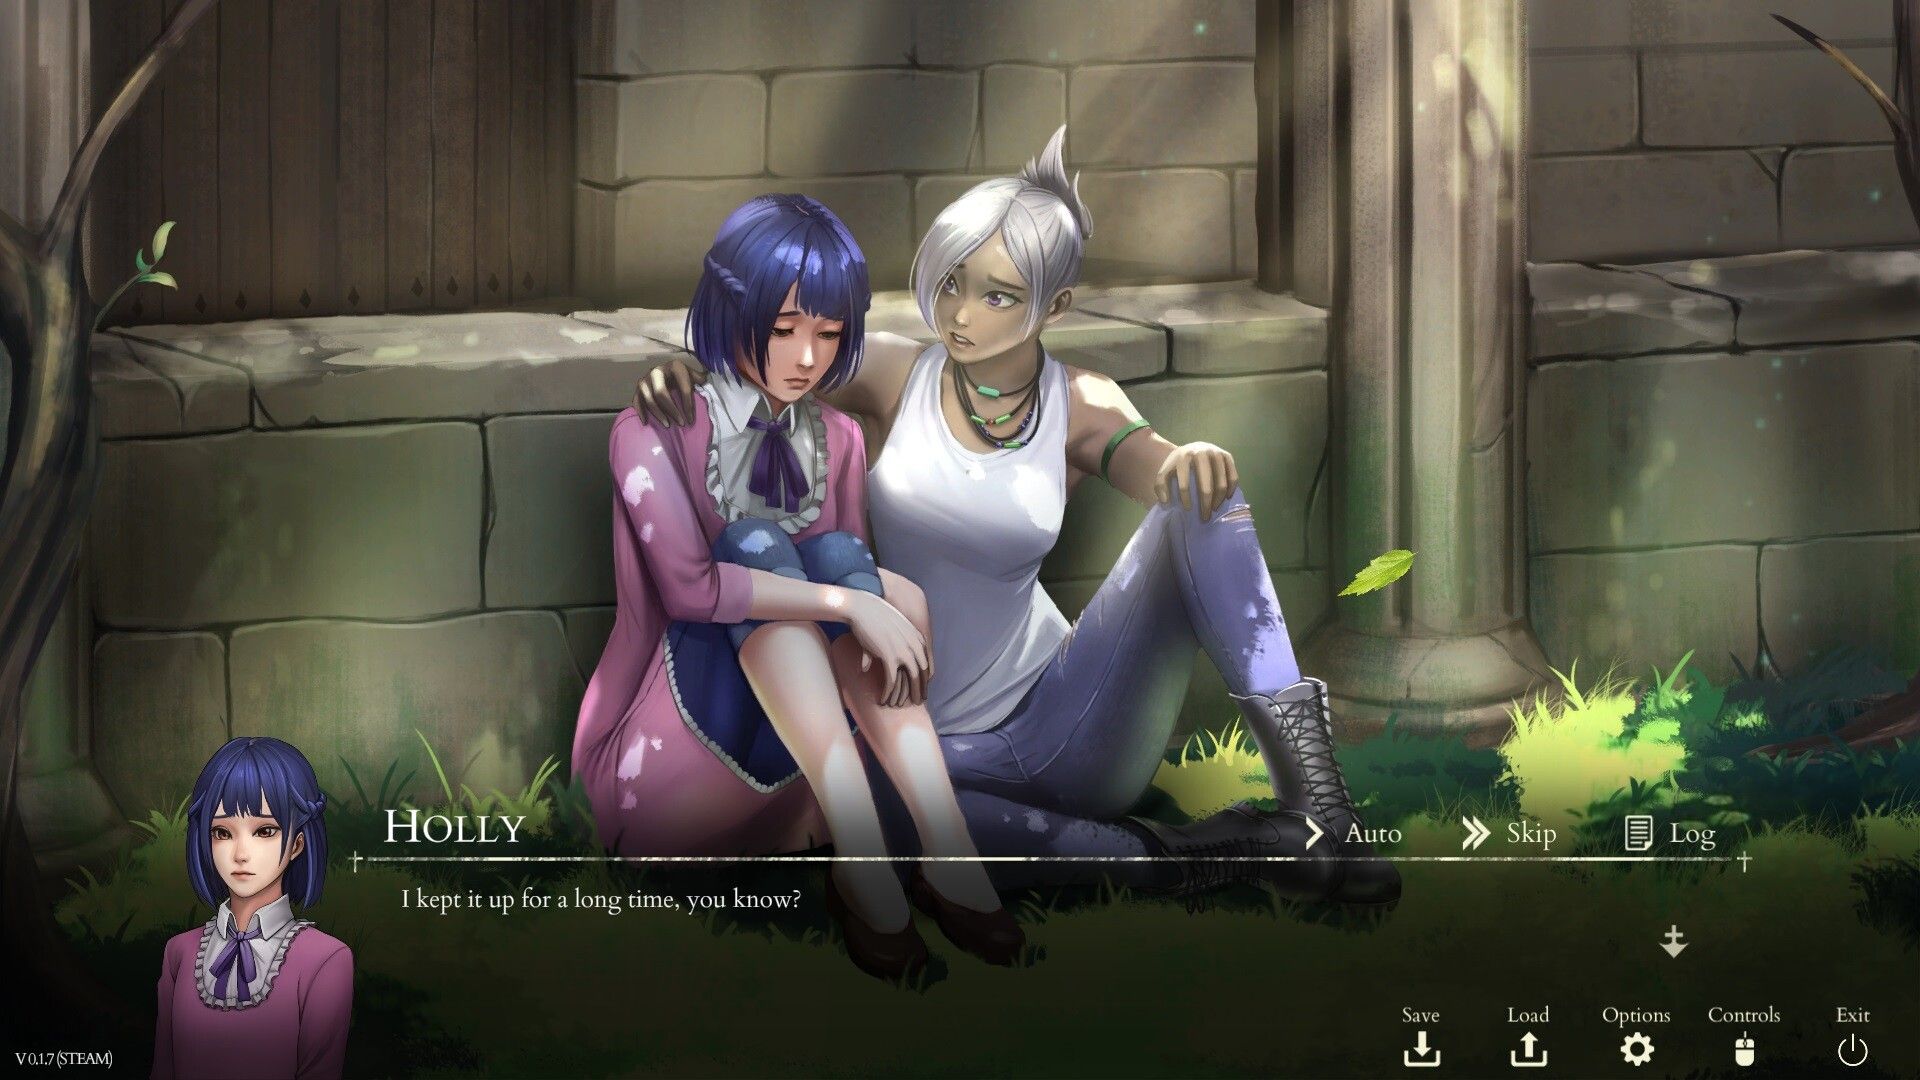 Deux personnages du jeu vidéo Saint Maker. L'une est une jeune fille triste, l'autre une jeune fille en train de la réconforter, avec un air inquiet.